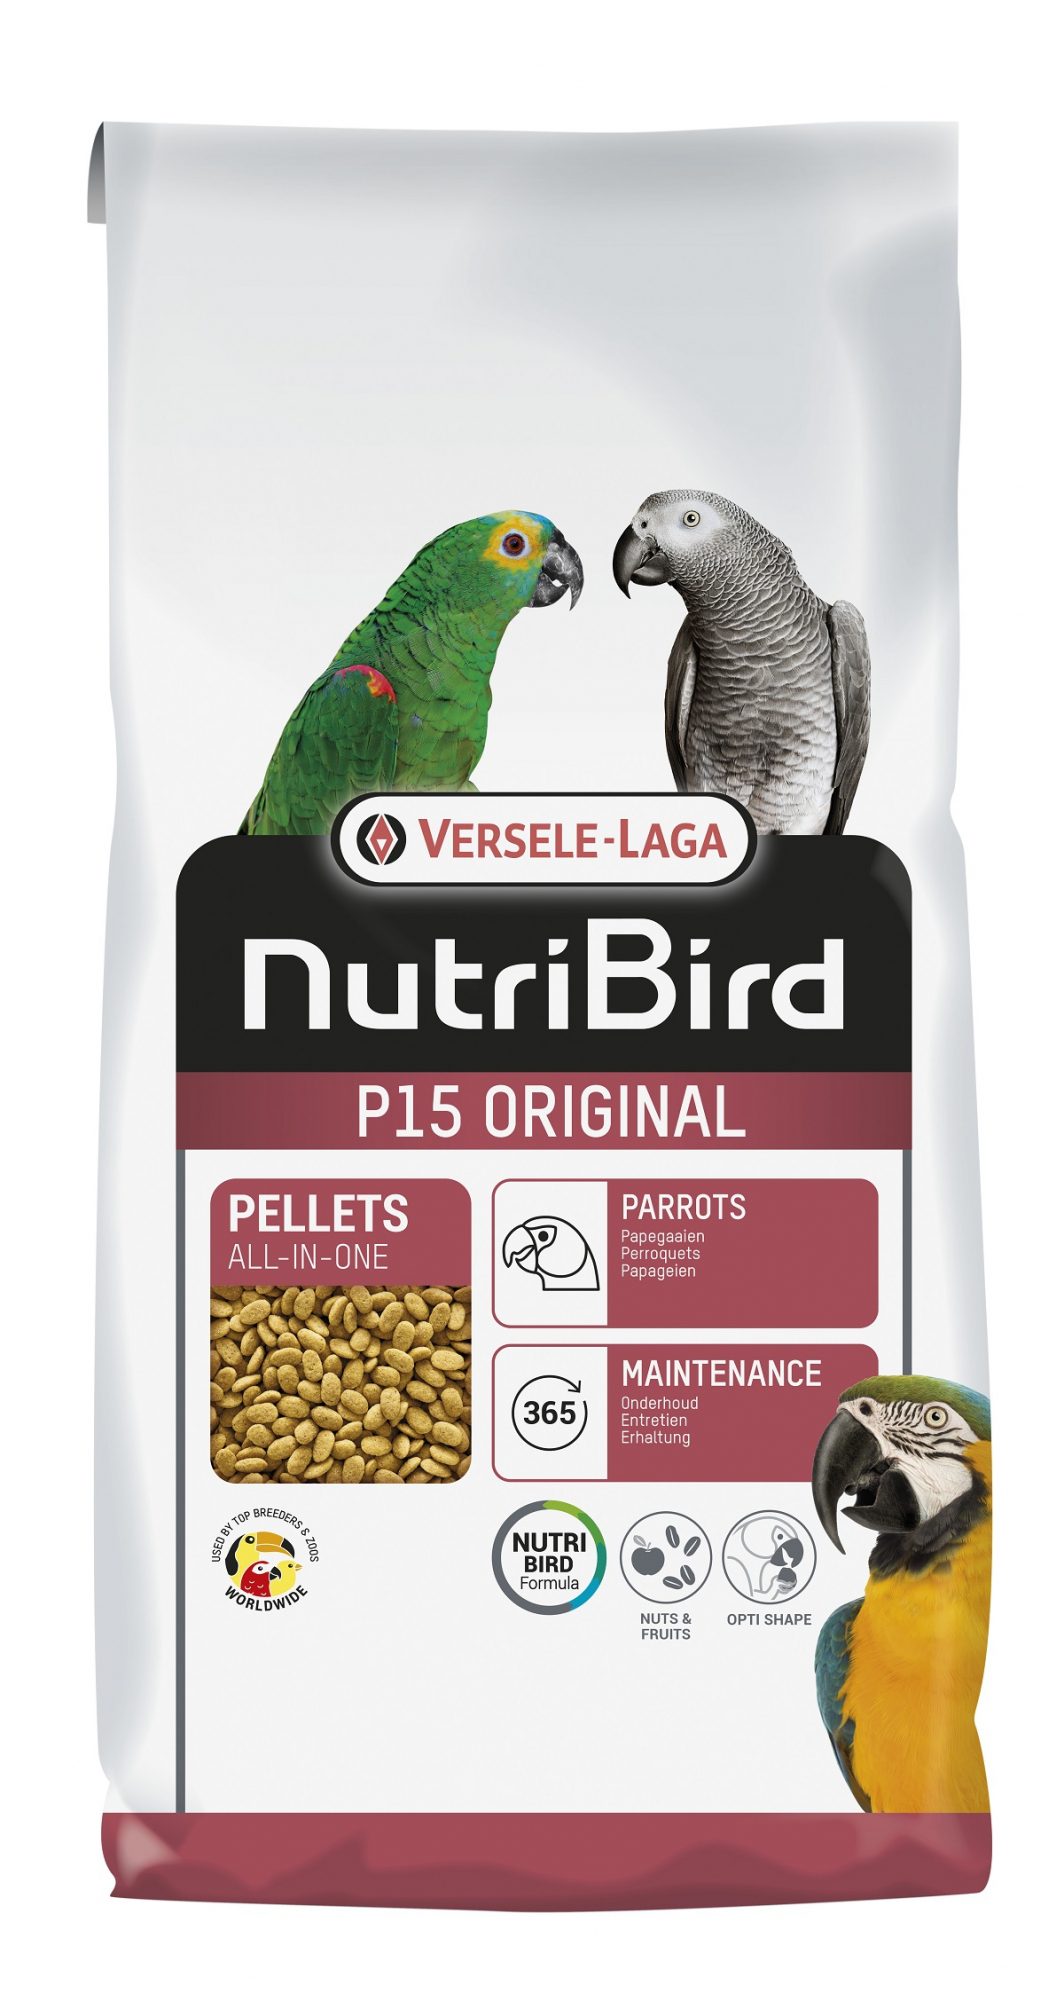 Alimentação para papagaio NutriBird P 15 Original